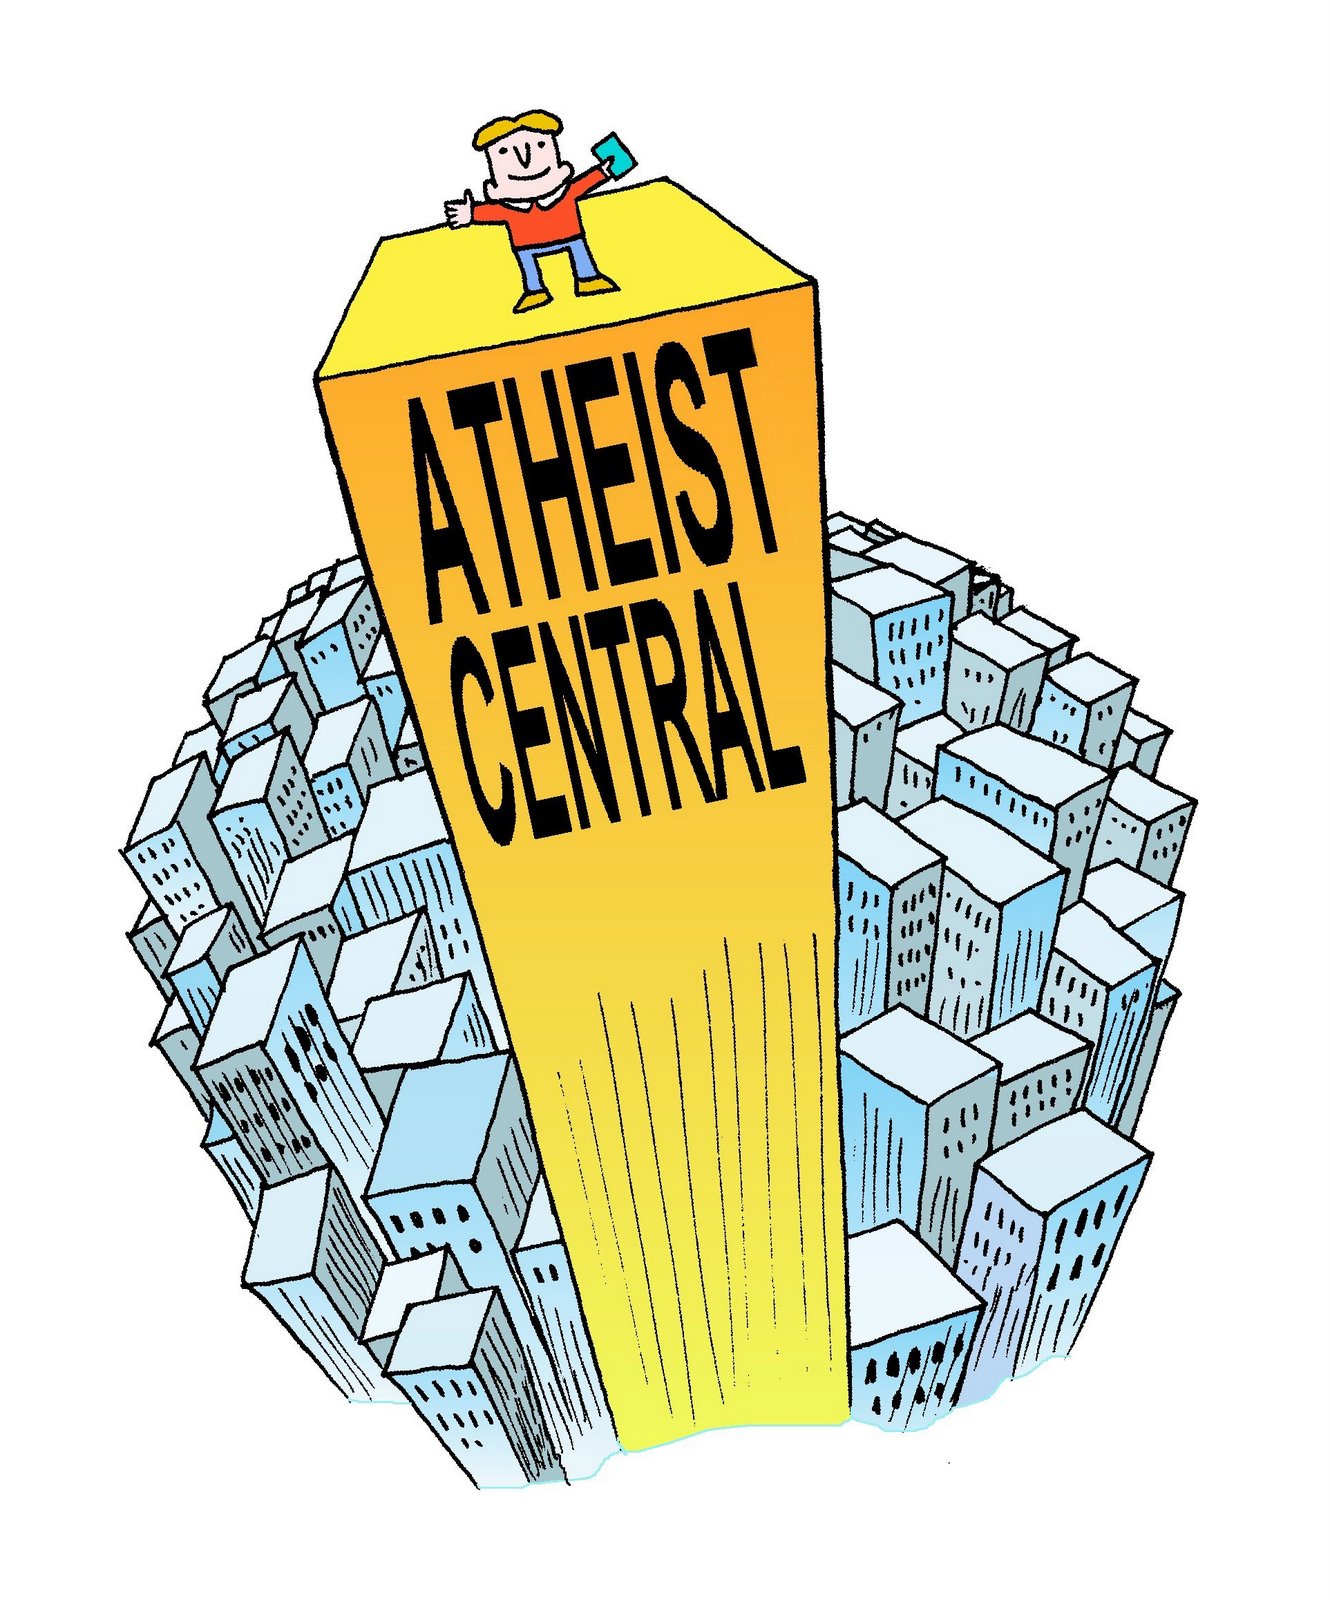 [Atheist+Central.jpg]